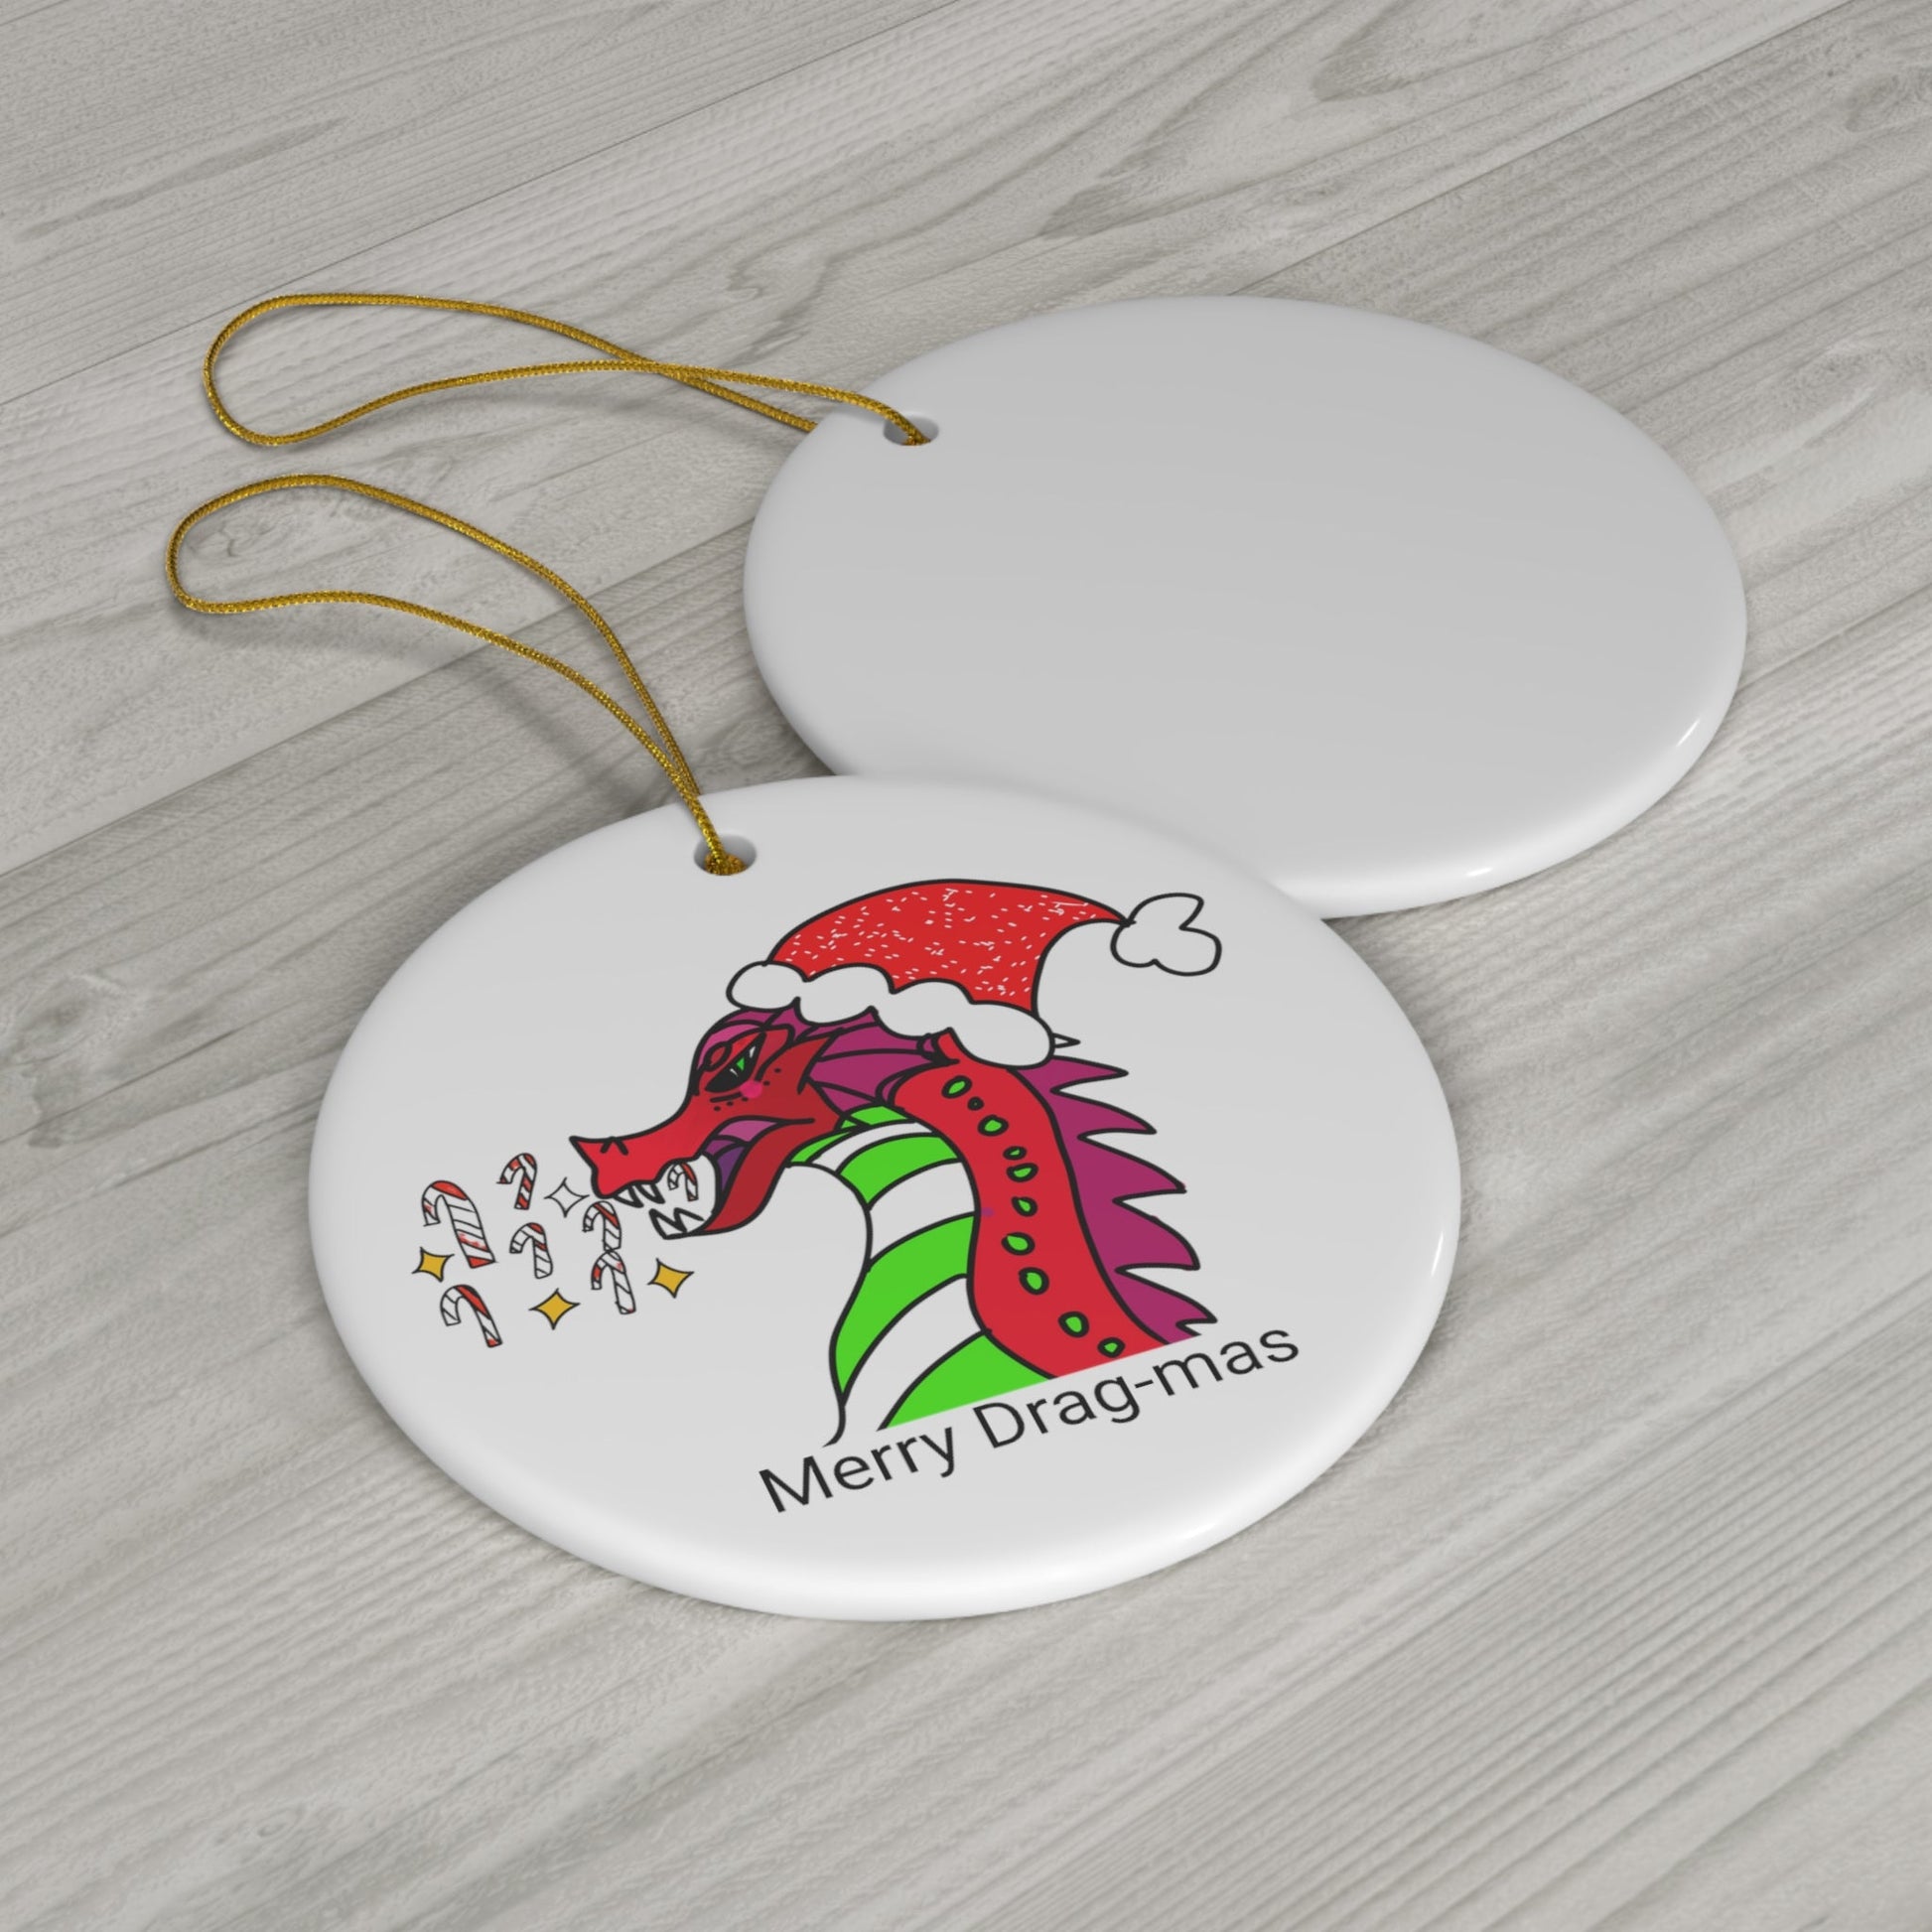 Merry Drag-mas Candy Cane Blaze, Festive Dragon Ceramic Ornament:-Home Decor-mysticalcherry